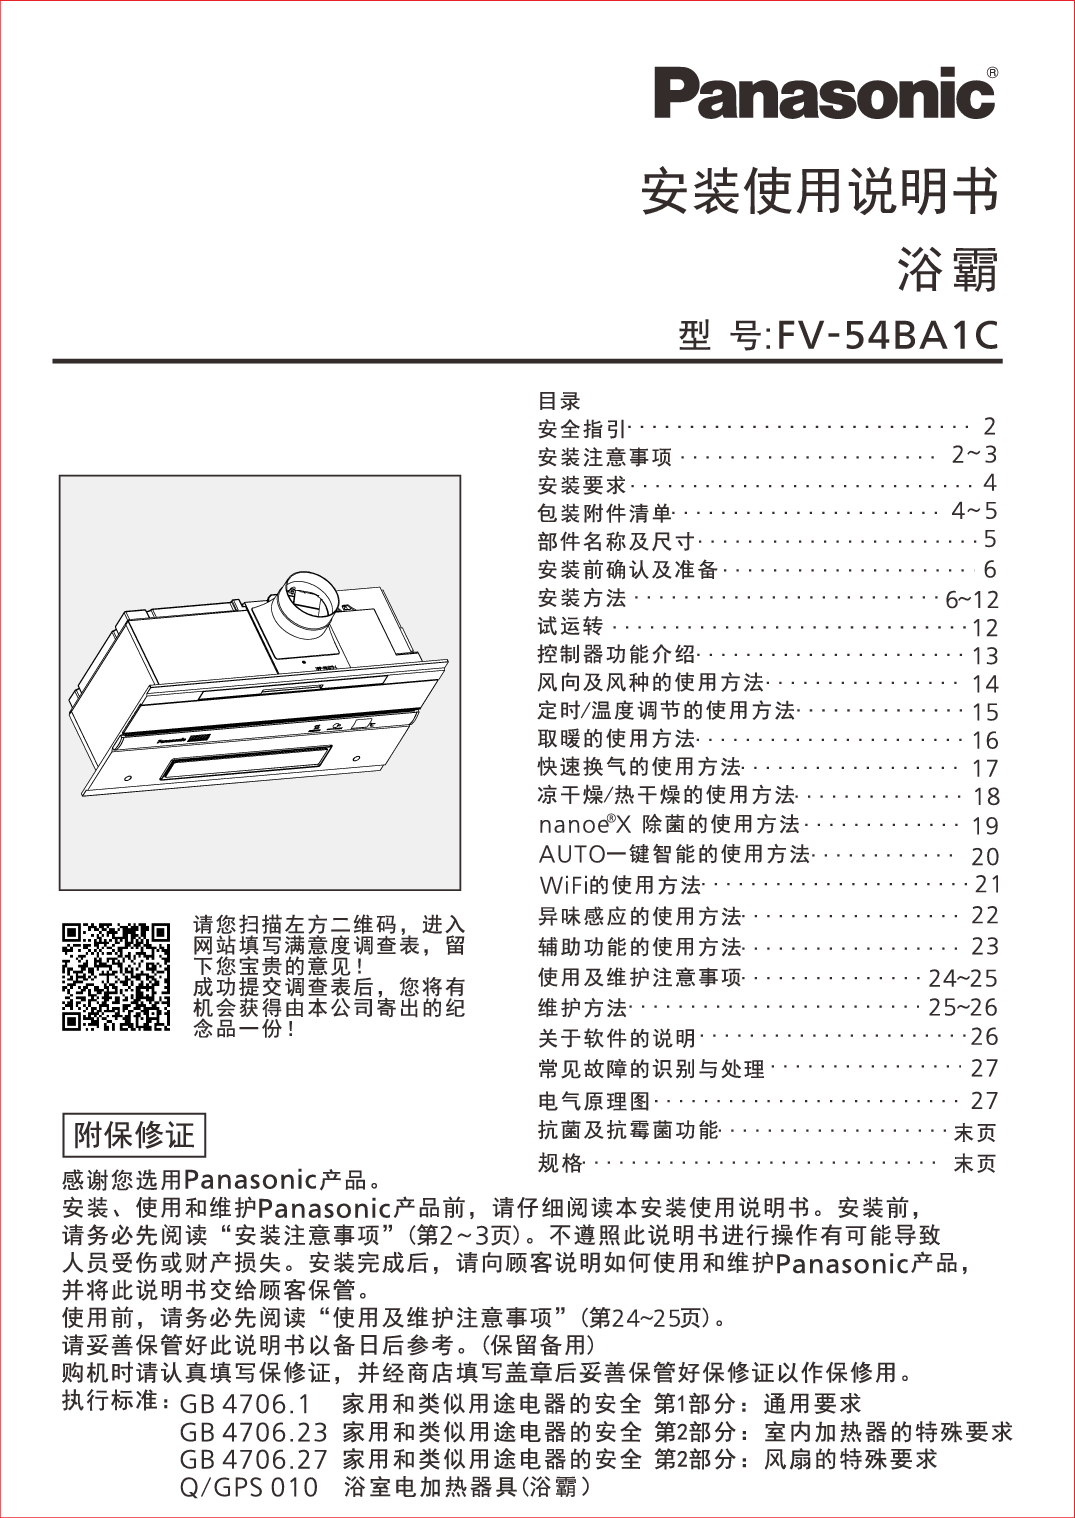 松下 Panasonic FV-54BA1C 安装使用说明书 封面